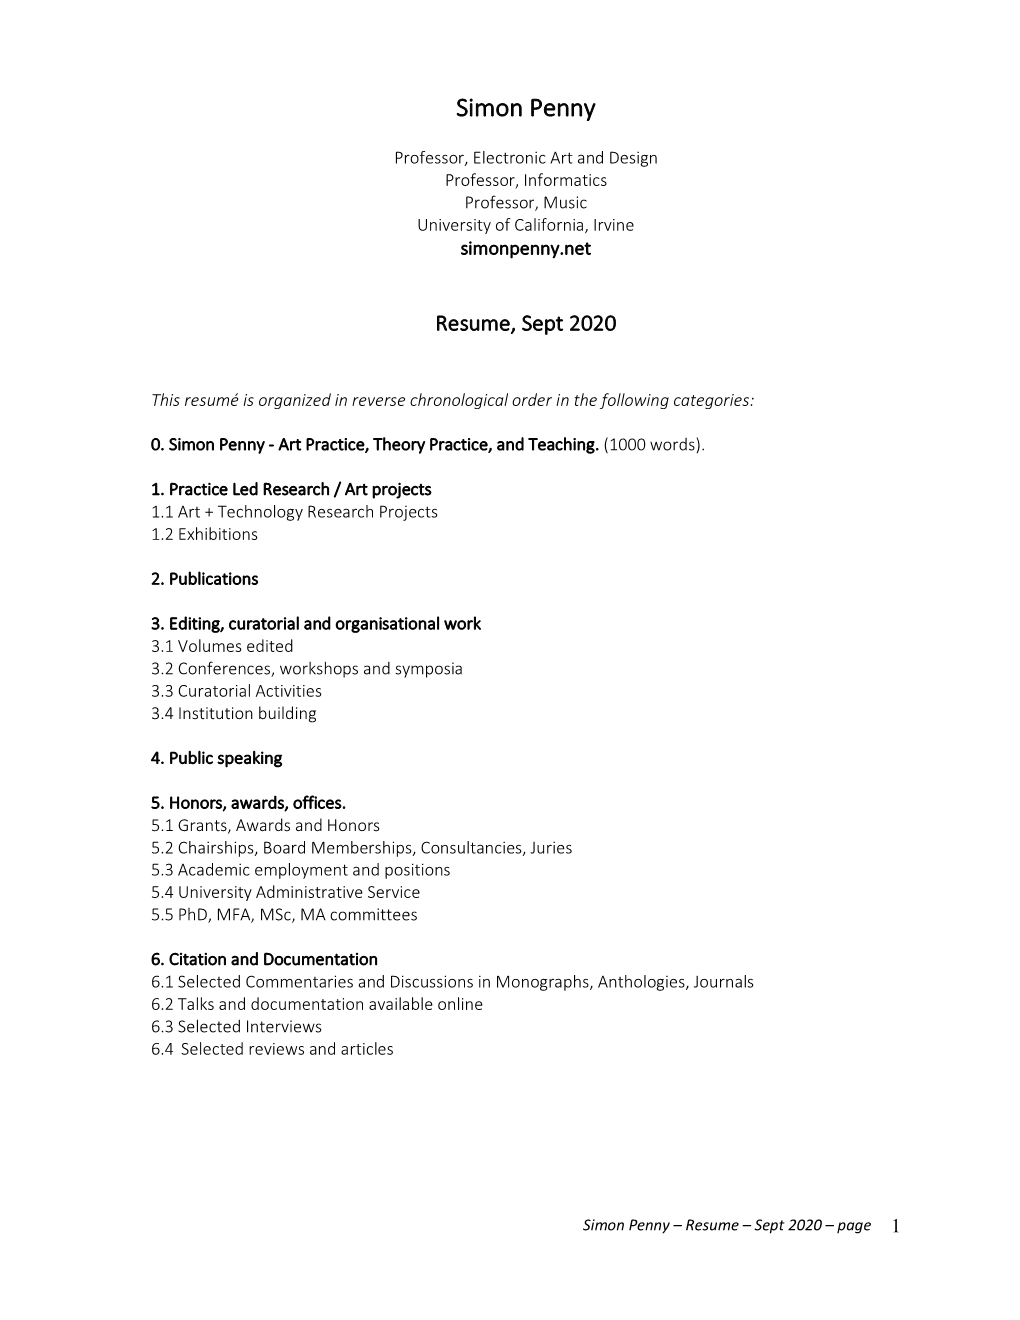 Resume, Sept 2020